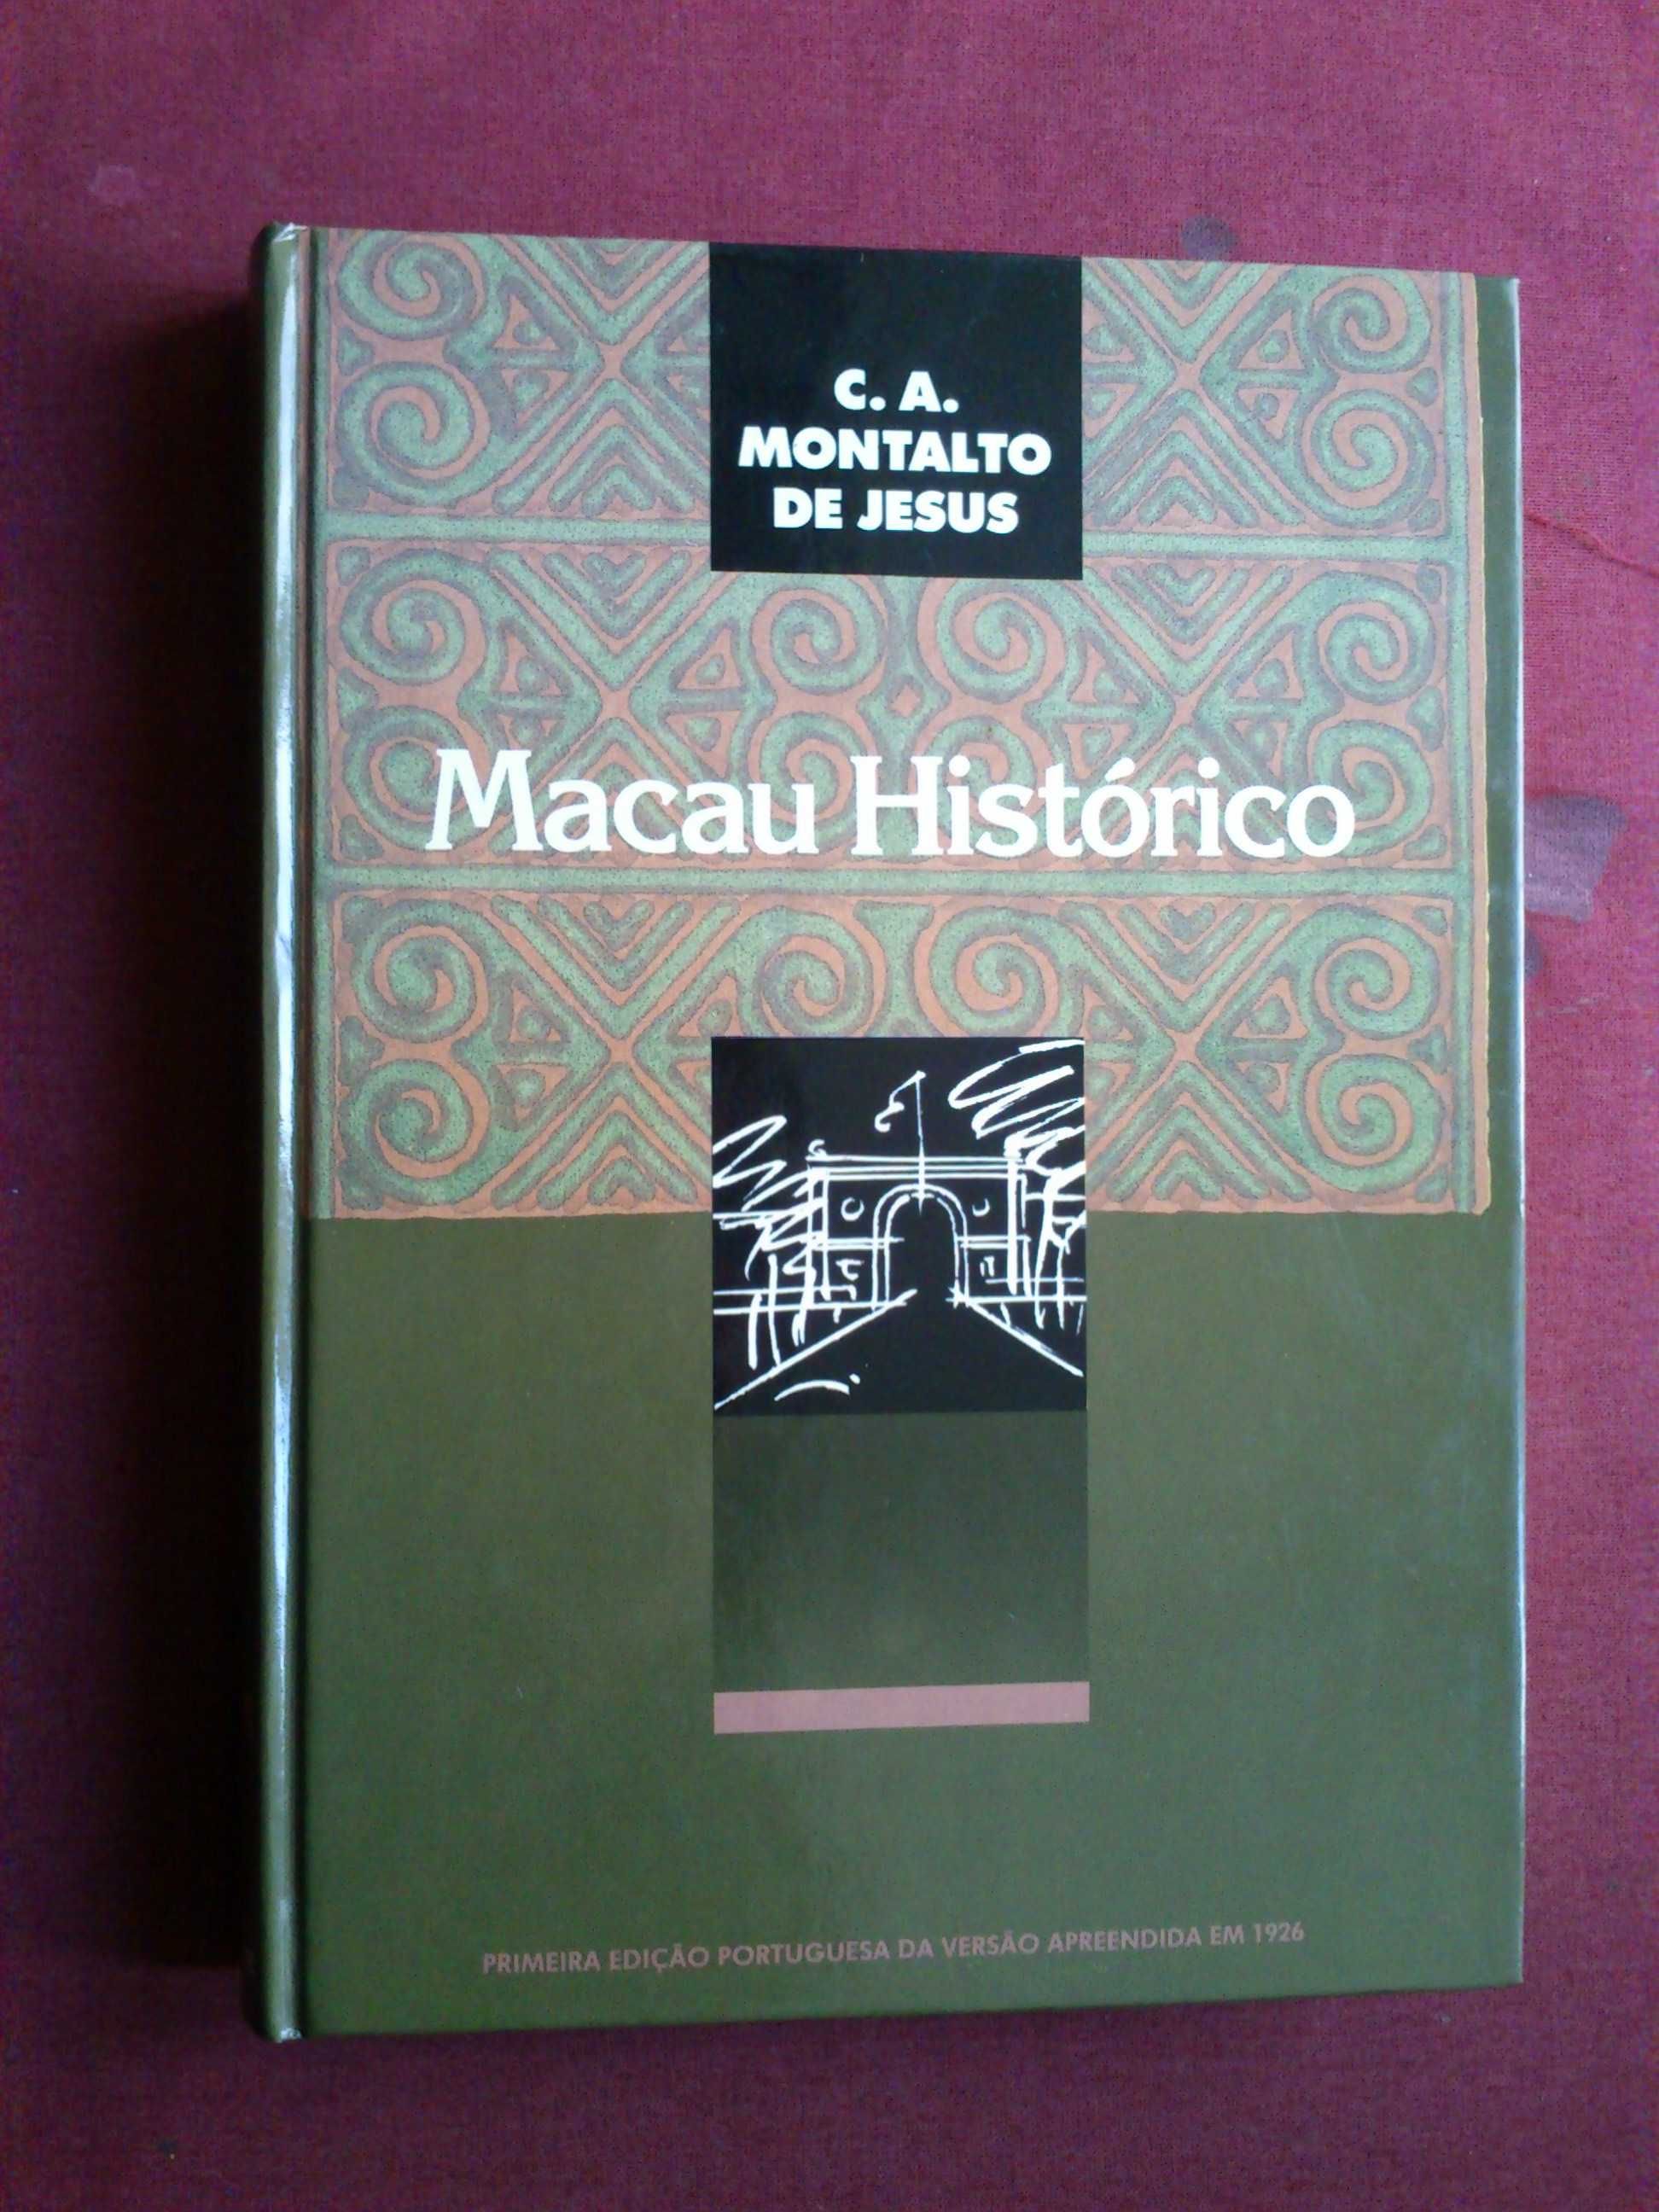 C.A. Montalto de Jesus-Macau Histórico-1990